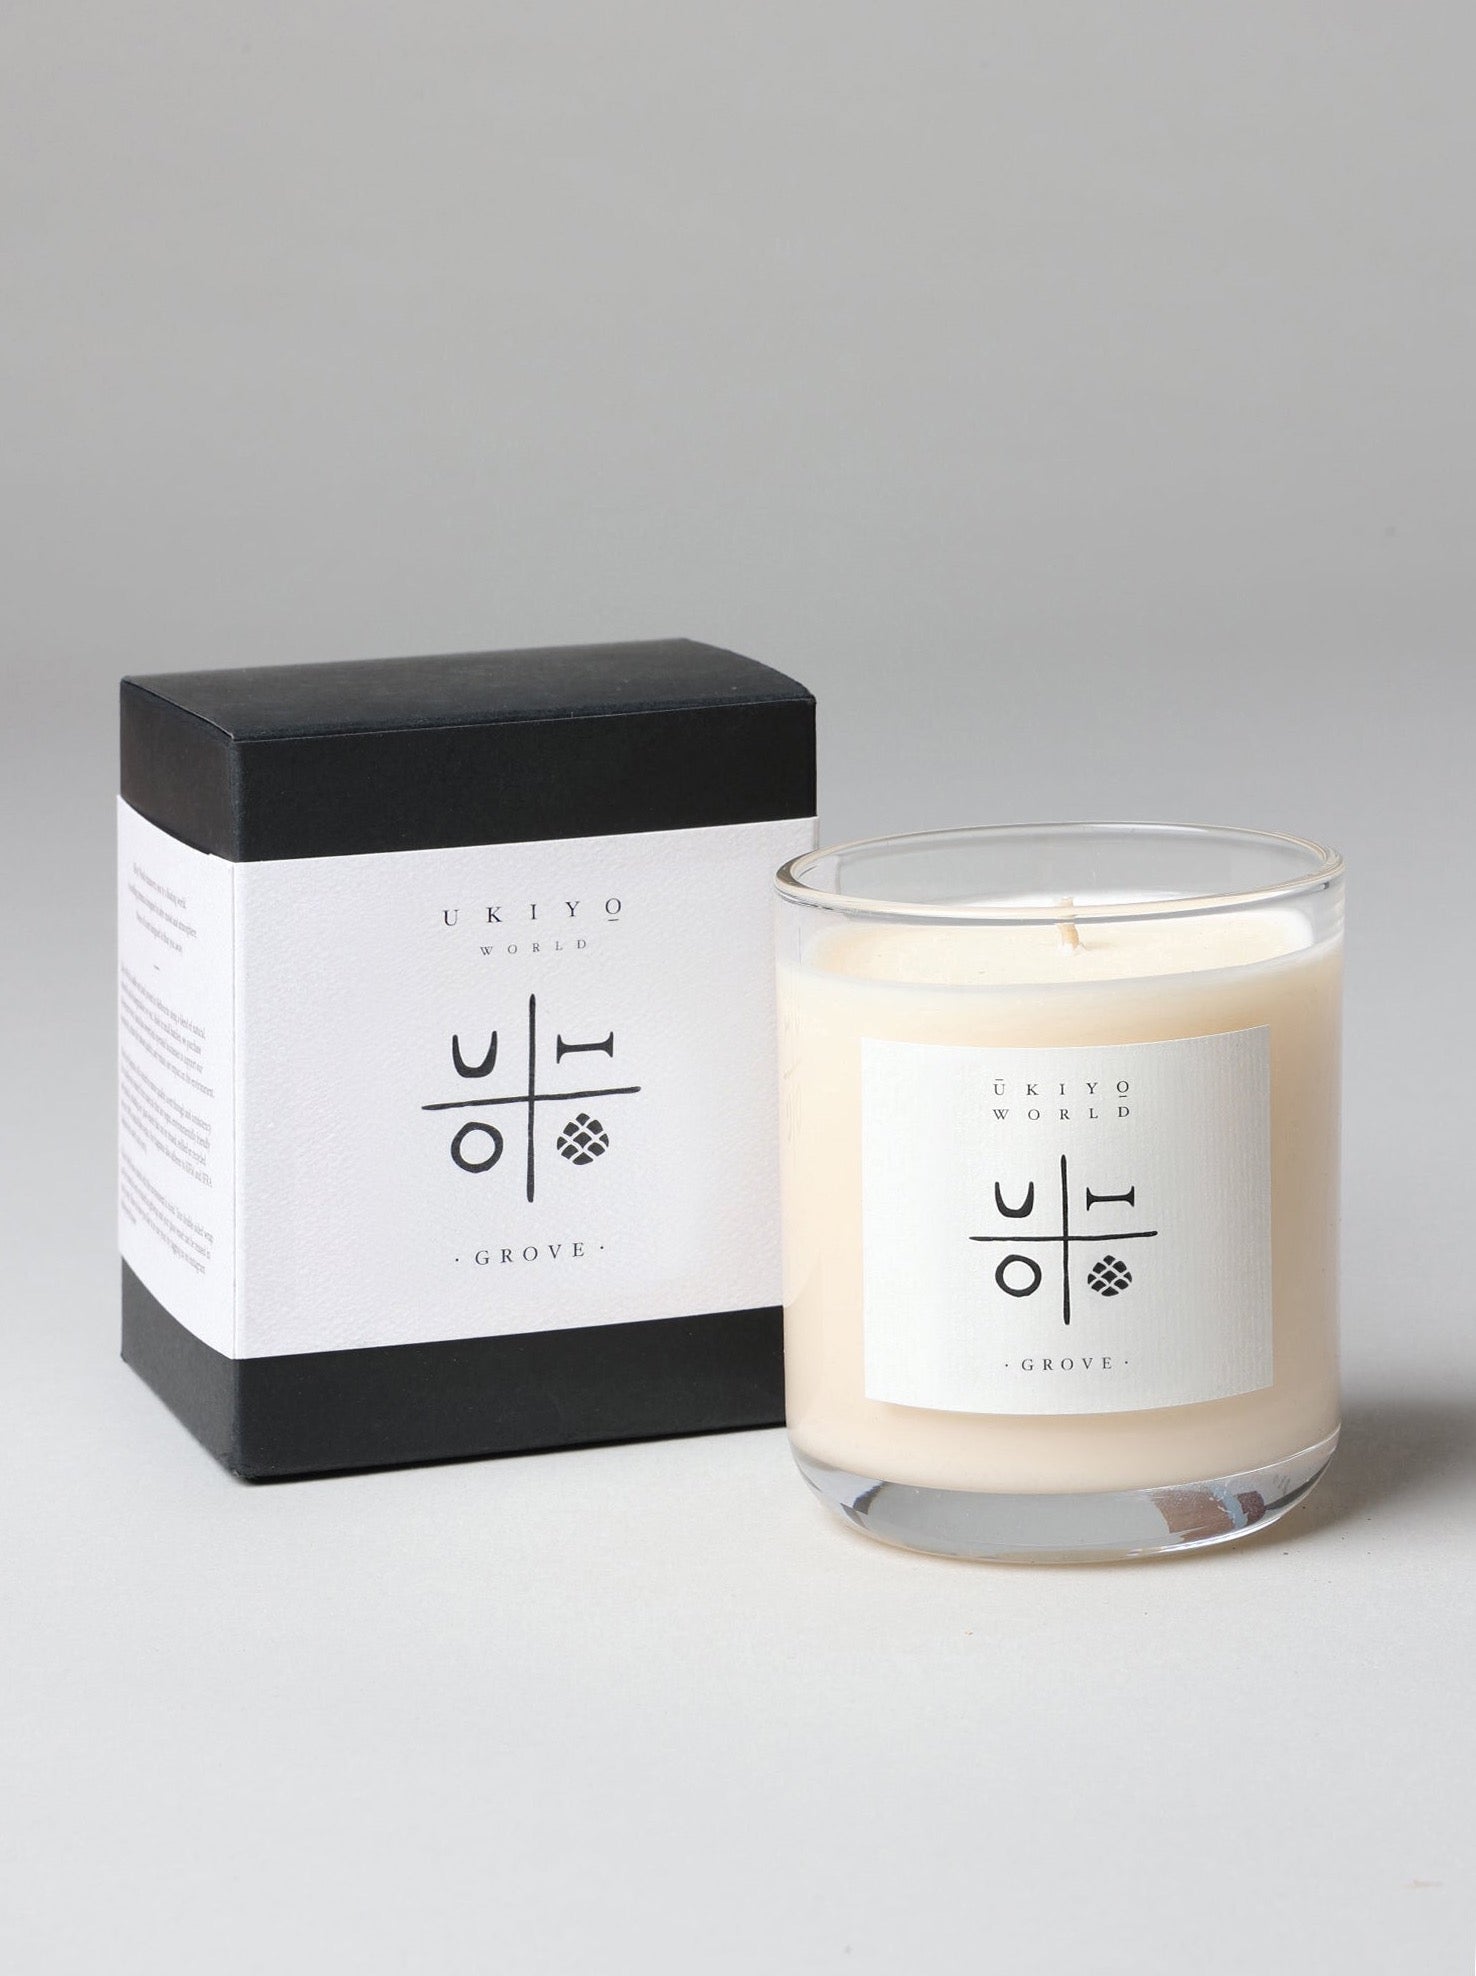 Ukiyo World Candles (3 scents)